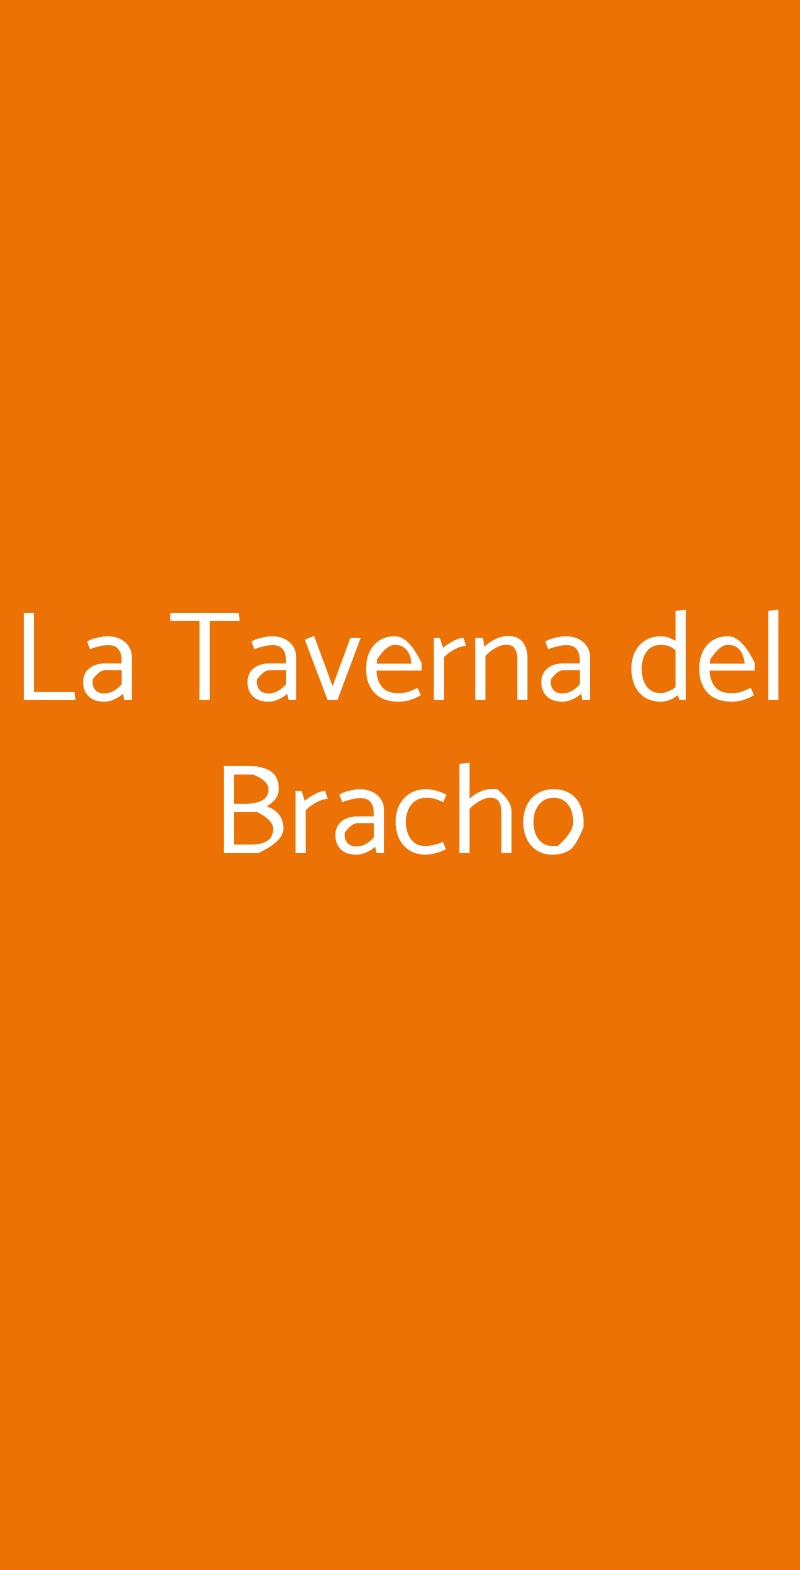 La Taverna del Bracho Roma menù 1 pagina